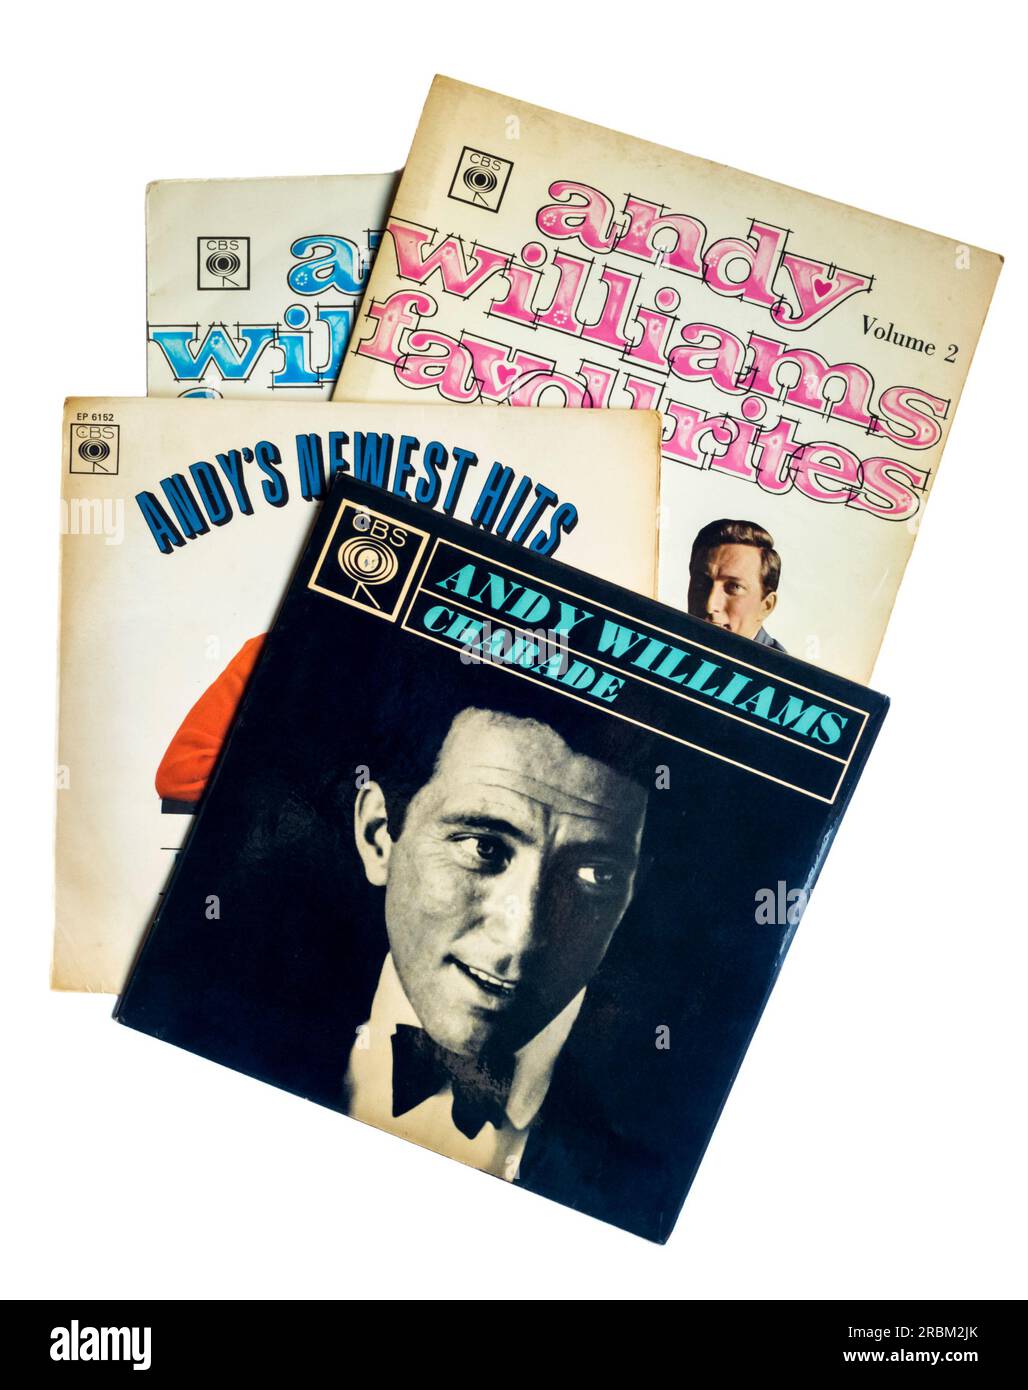 Eine Auswahl von Andy Williams-Rekorden, die in den 1960er veröffentlicht wurden. Stockfoto